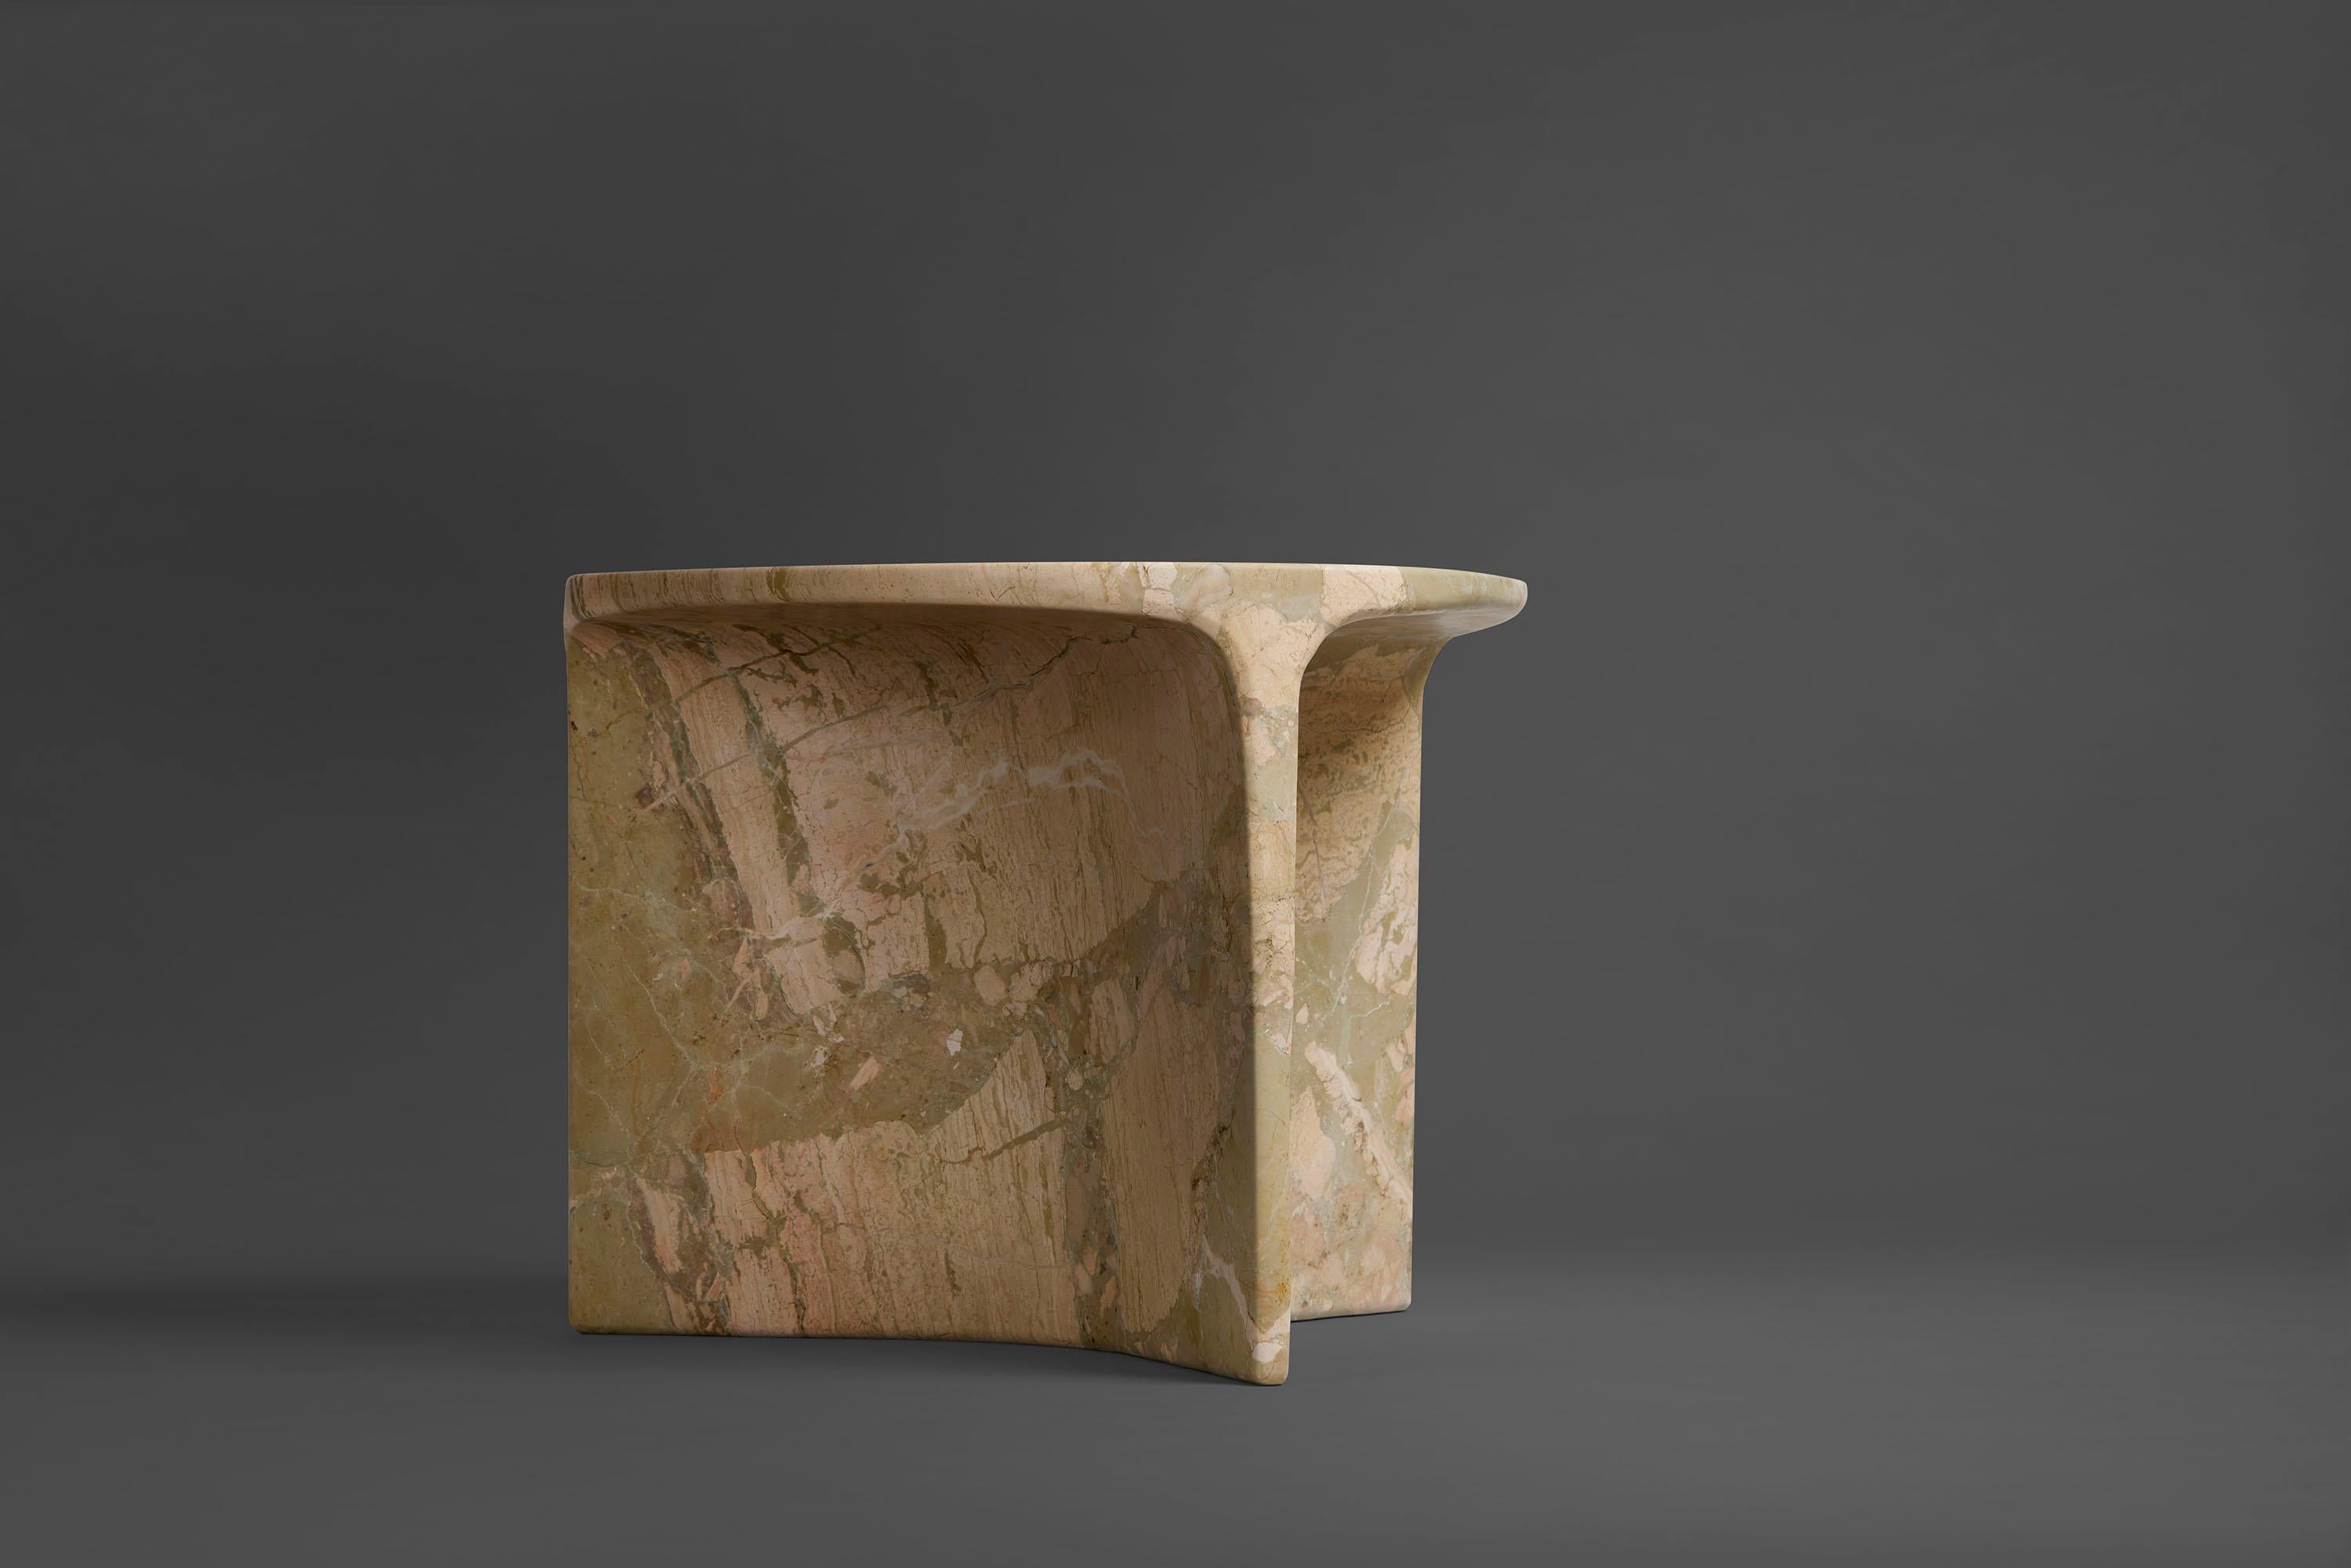 Der Beistelltisch Carv wird aus einem einzigen Block des italienischen Marmors Ceppo Monet geschnitten.
Wesentliches und organisches Design, das auf natürliche Weise eine flache, fließende Tischplatte schafft
zu einem Y-förmigen Fuß, der die Adern